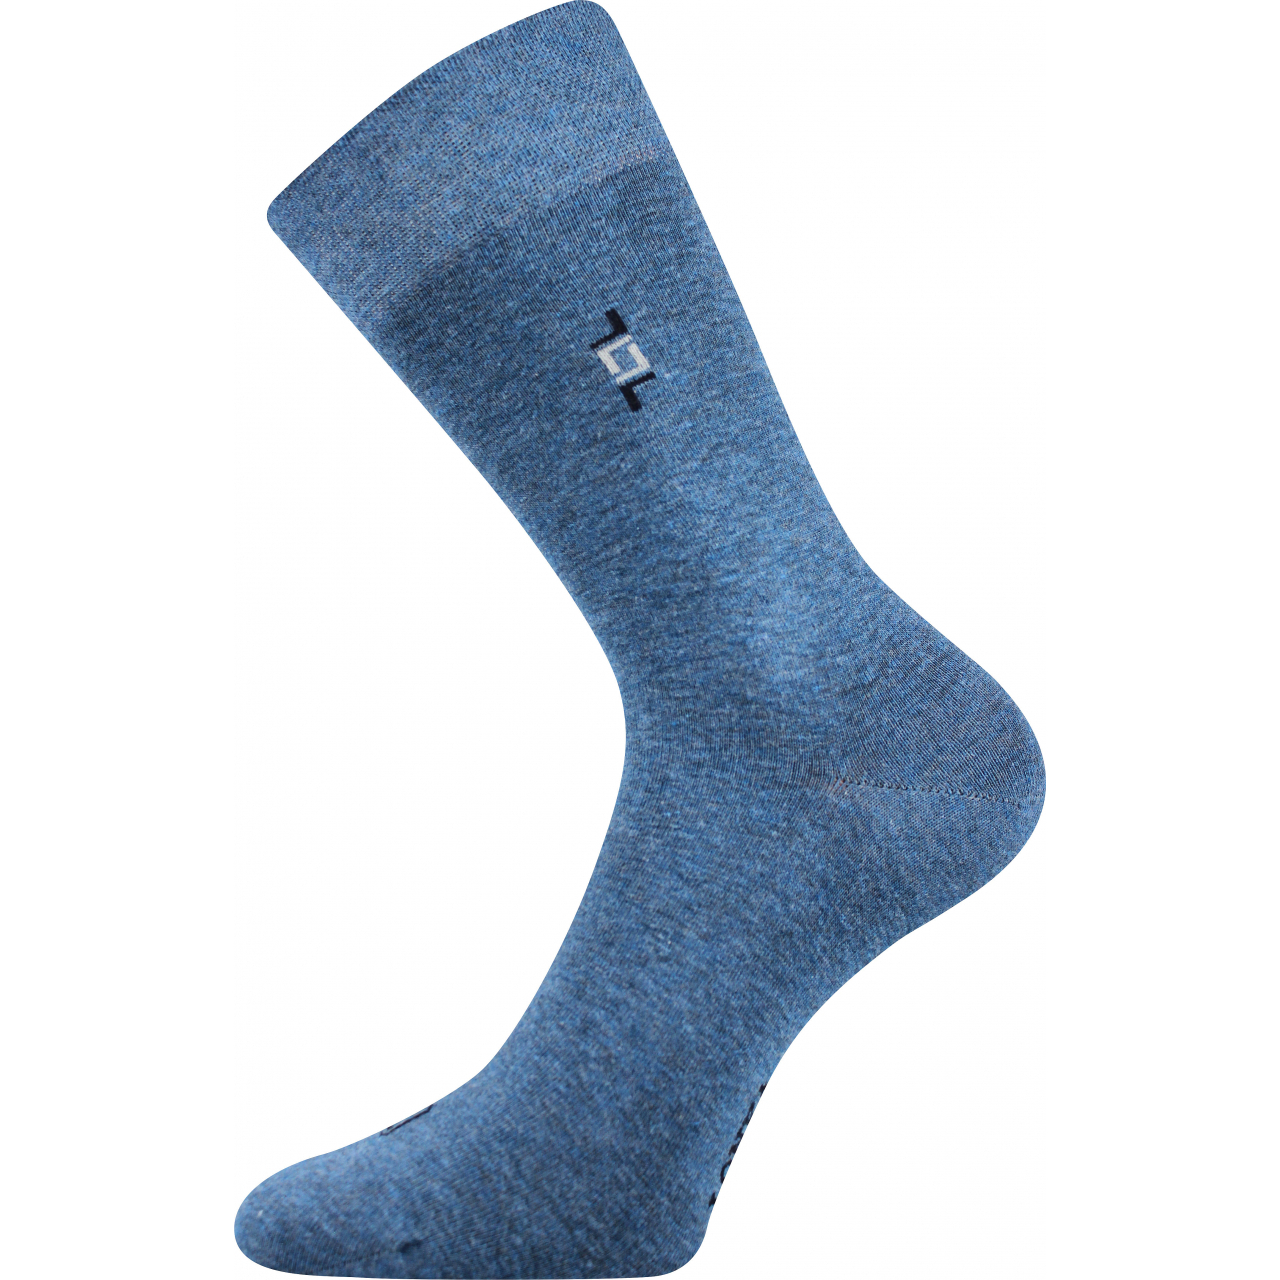 Ponožky pánské společenské Lonka Despok - modré, 39-42